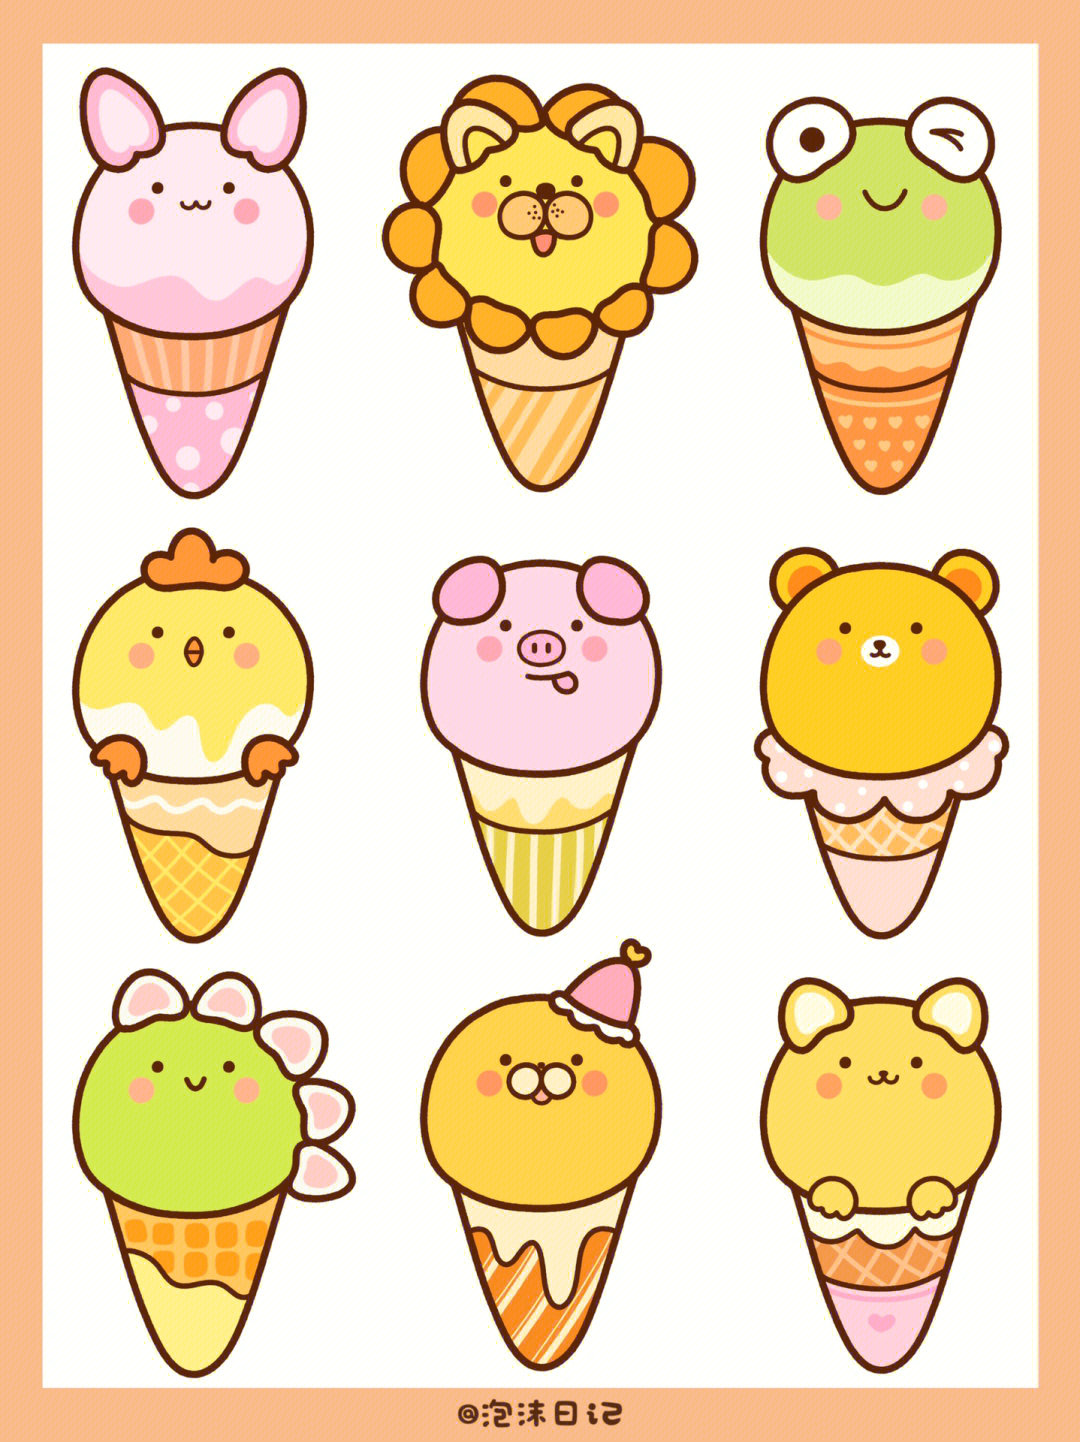 冰淇淋,简笔画 可爱图片